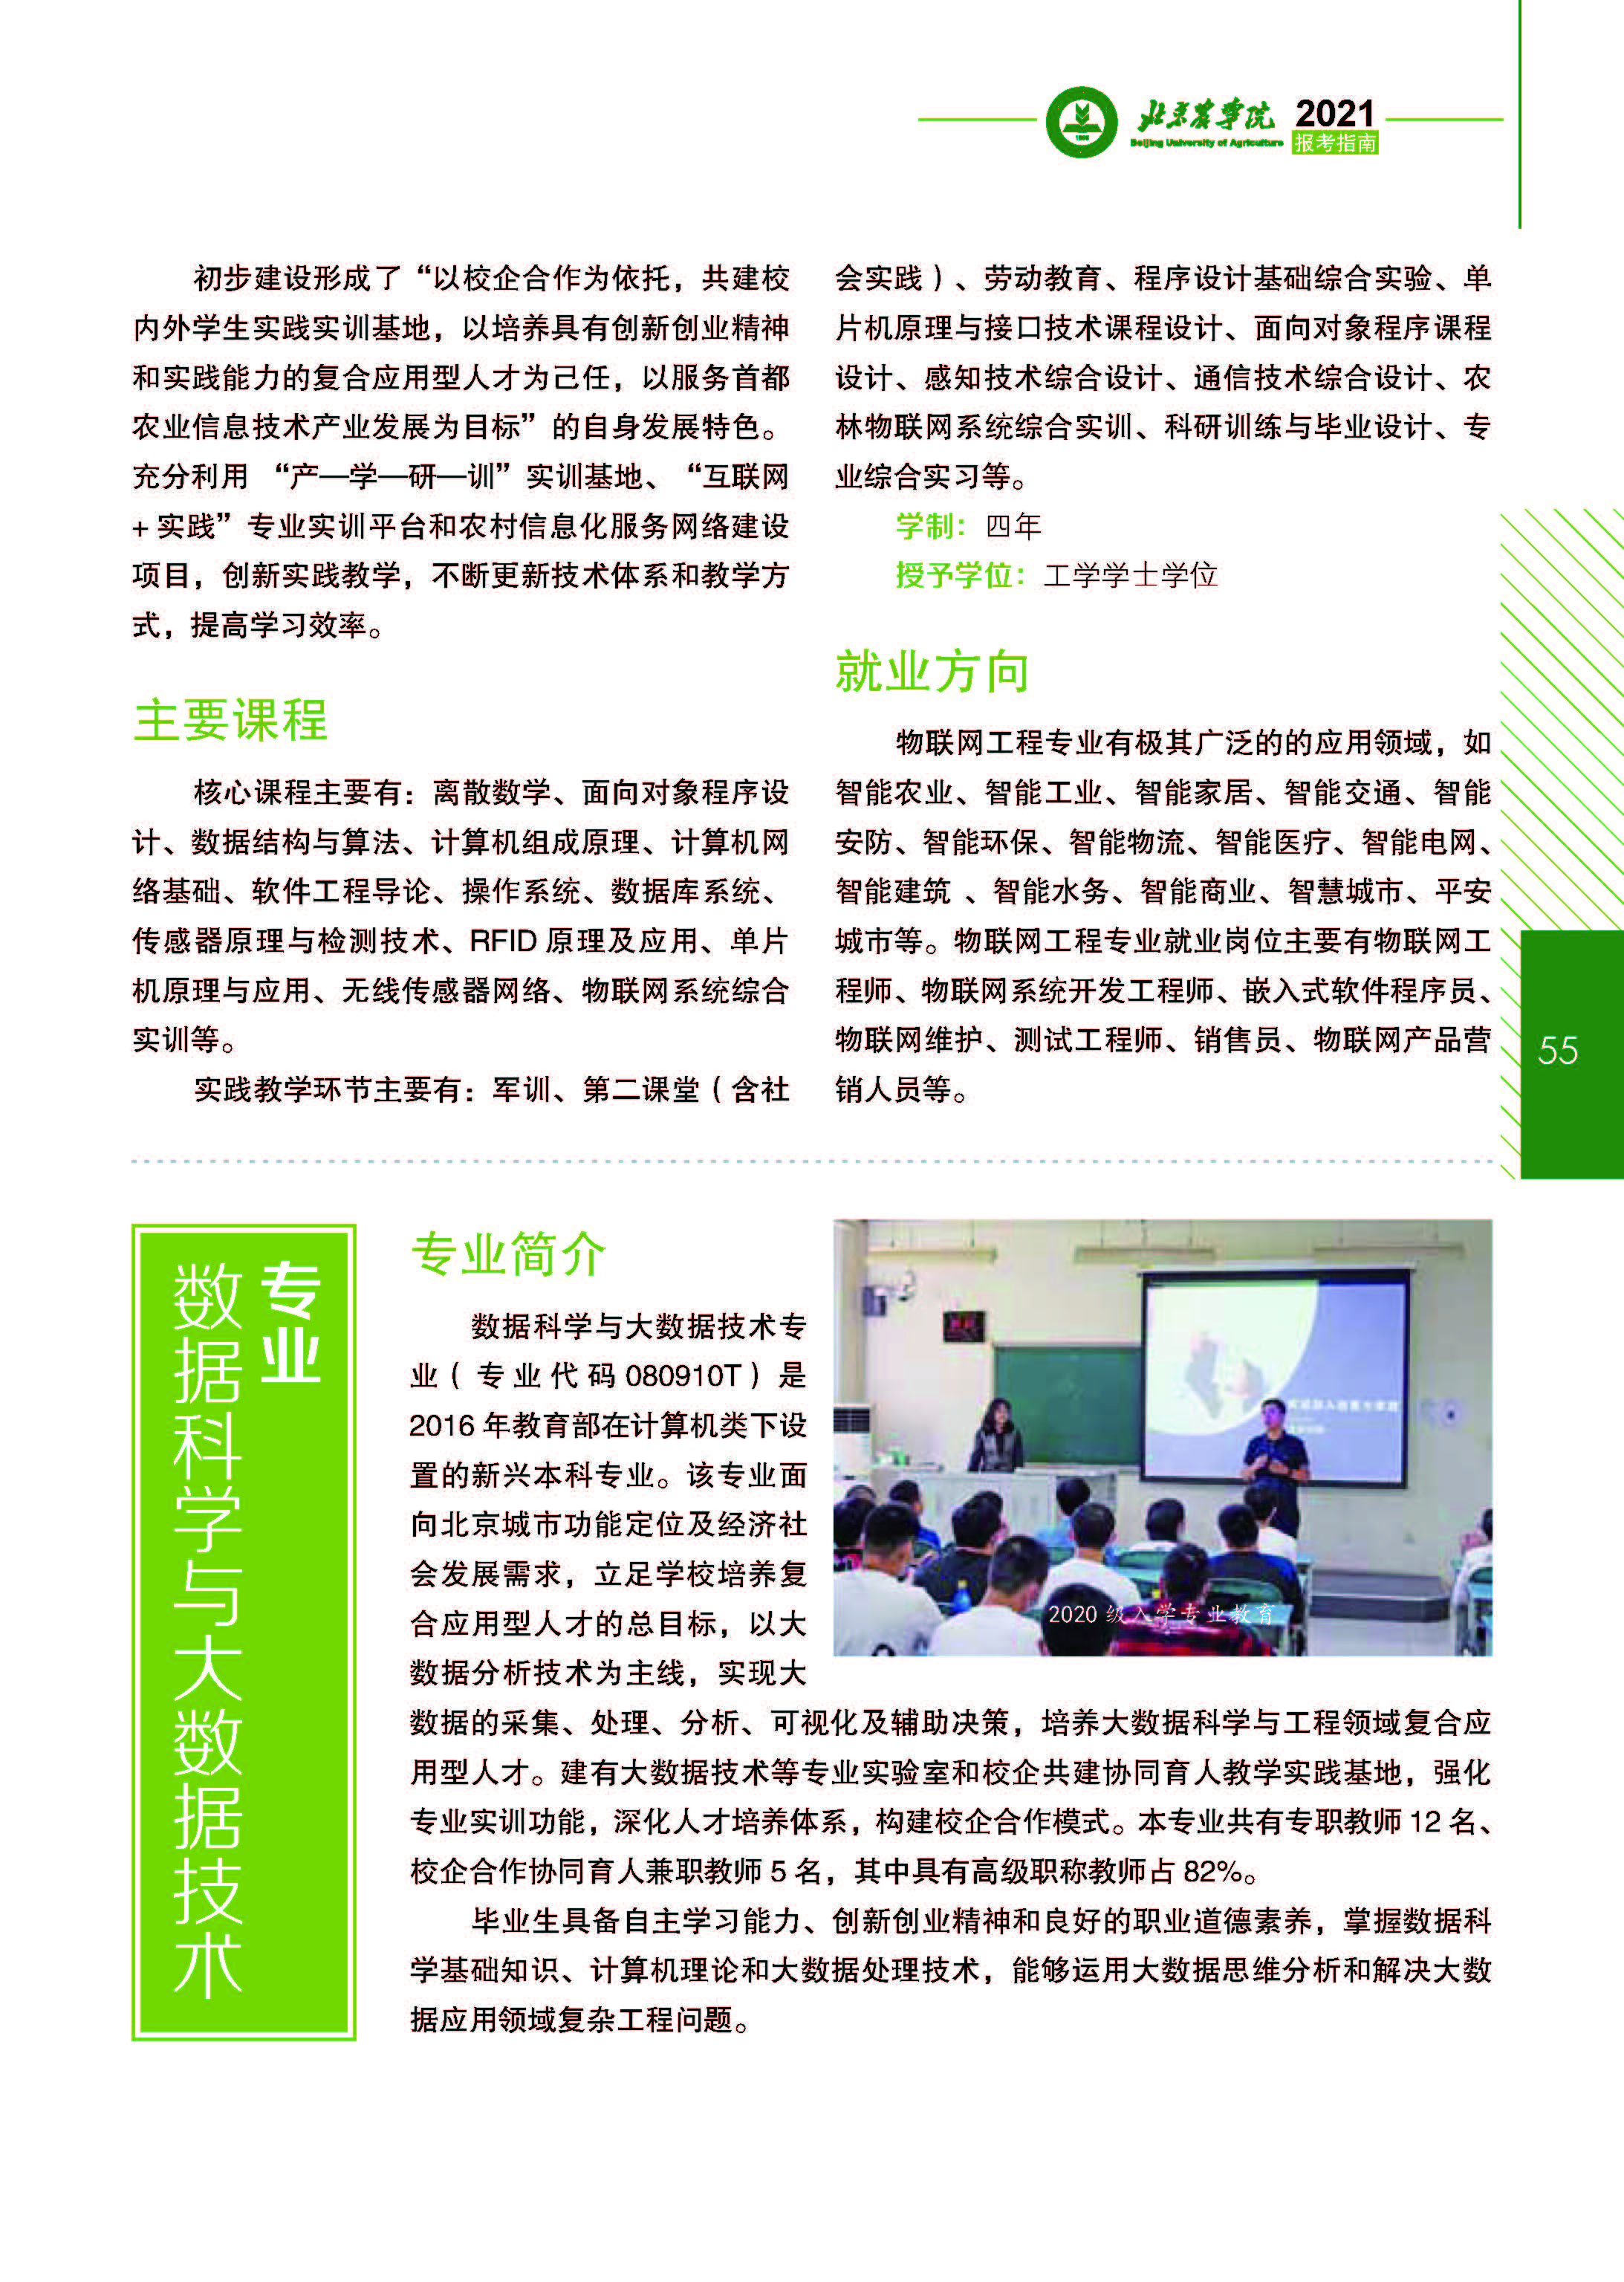 北京农学院计算机与信息工程学院简介